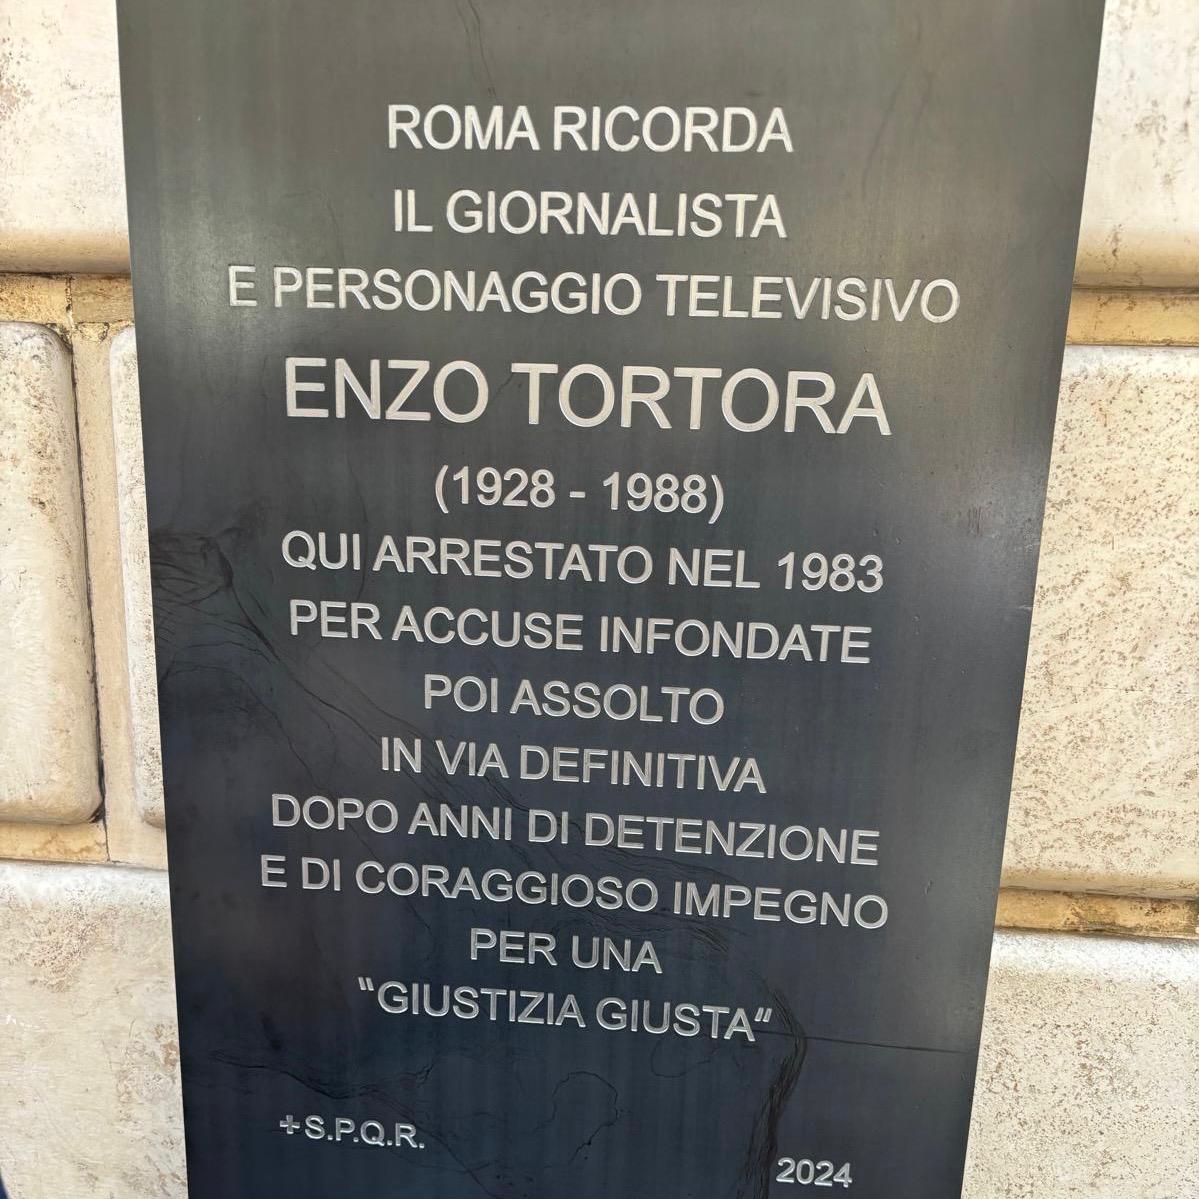 ROMA RICORDA – ENZO TORTORA